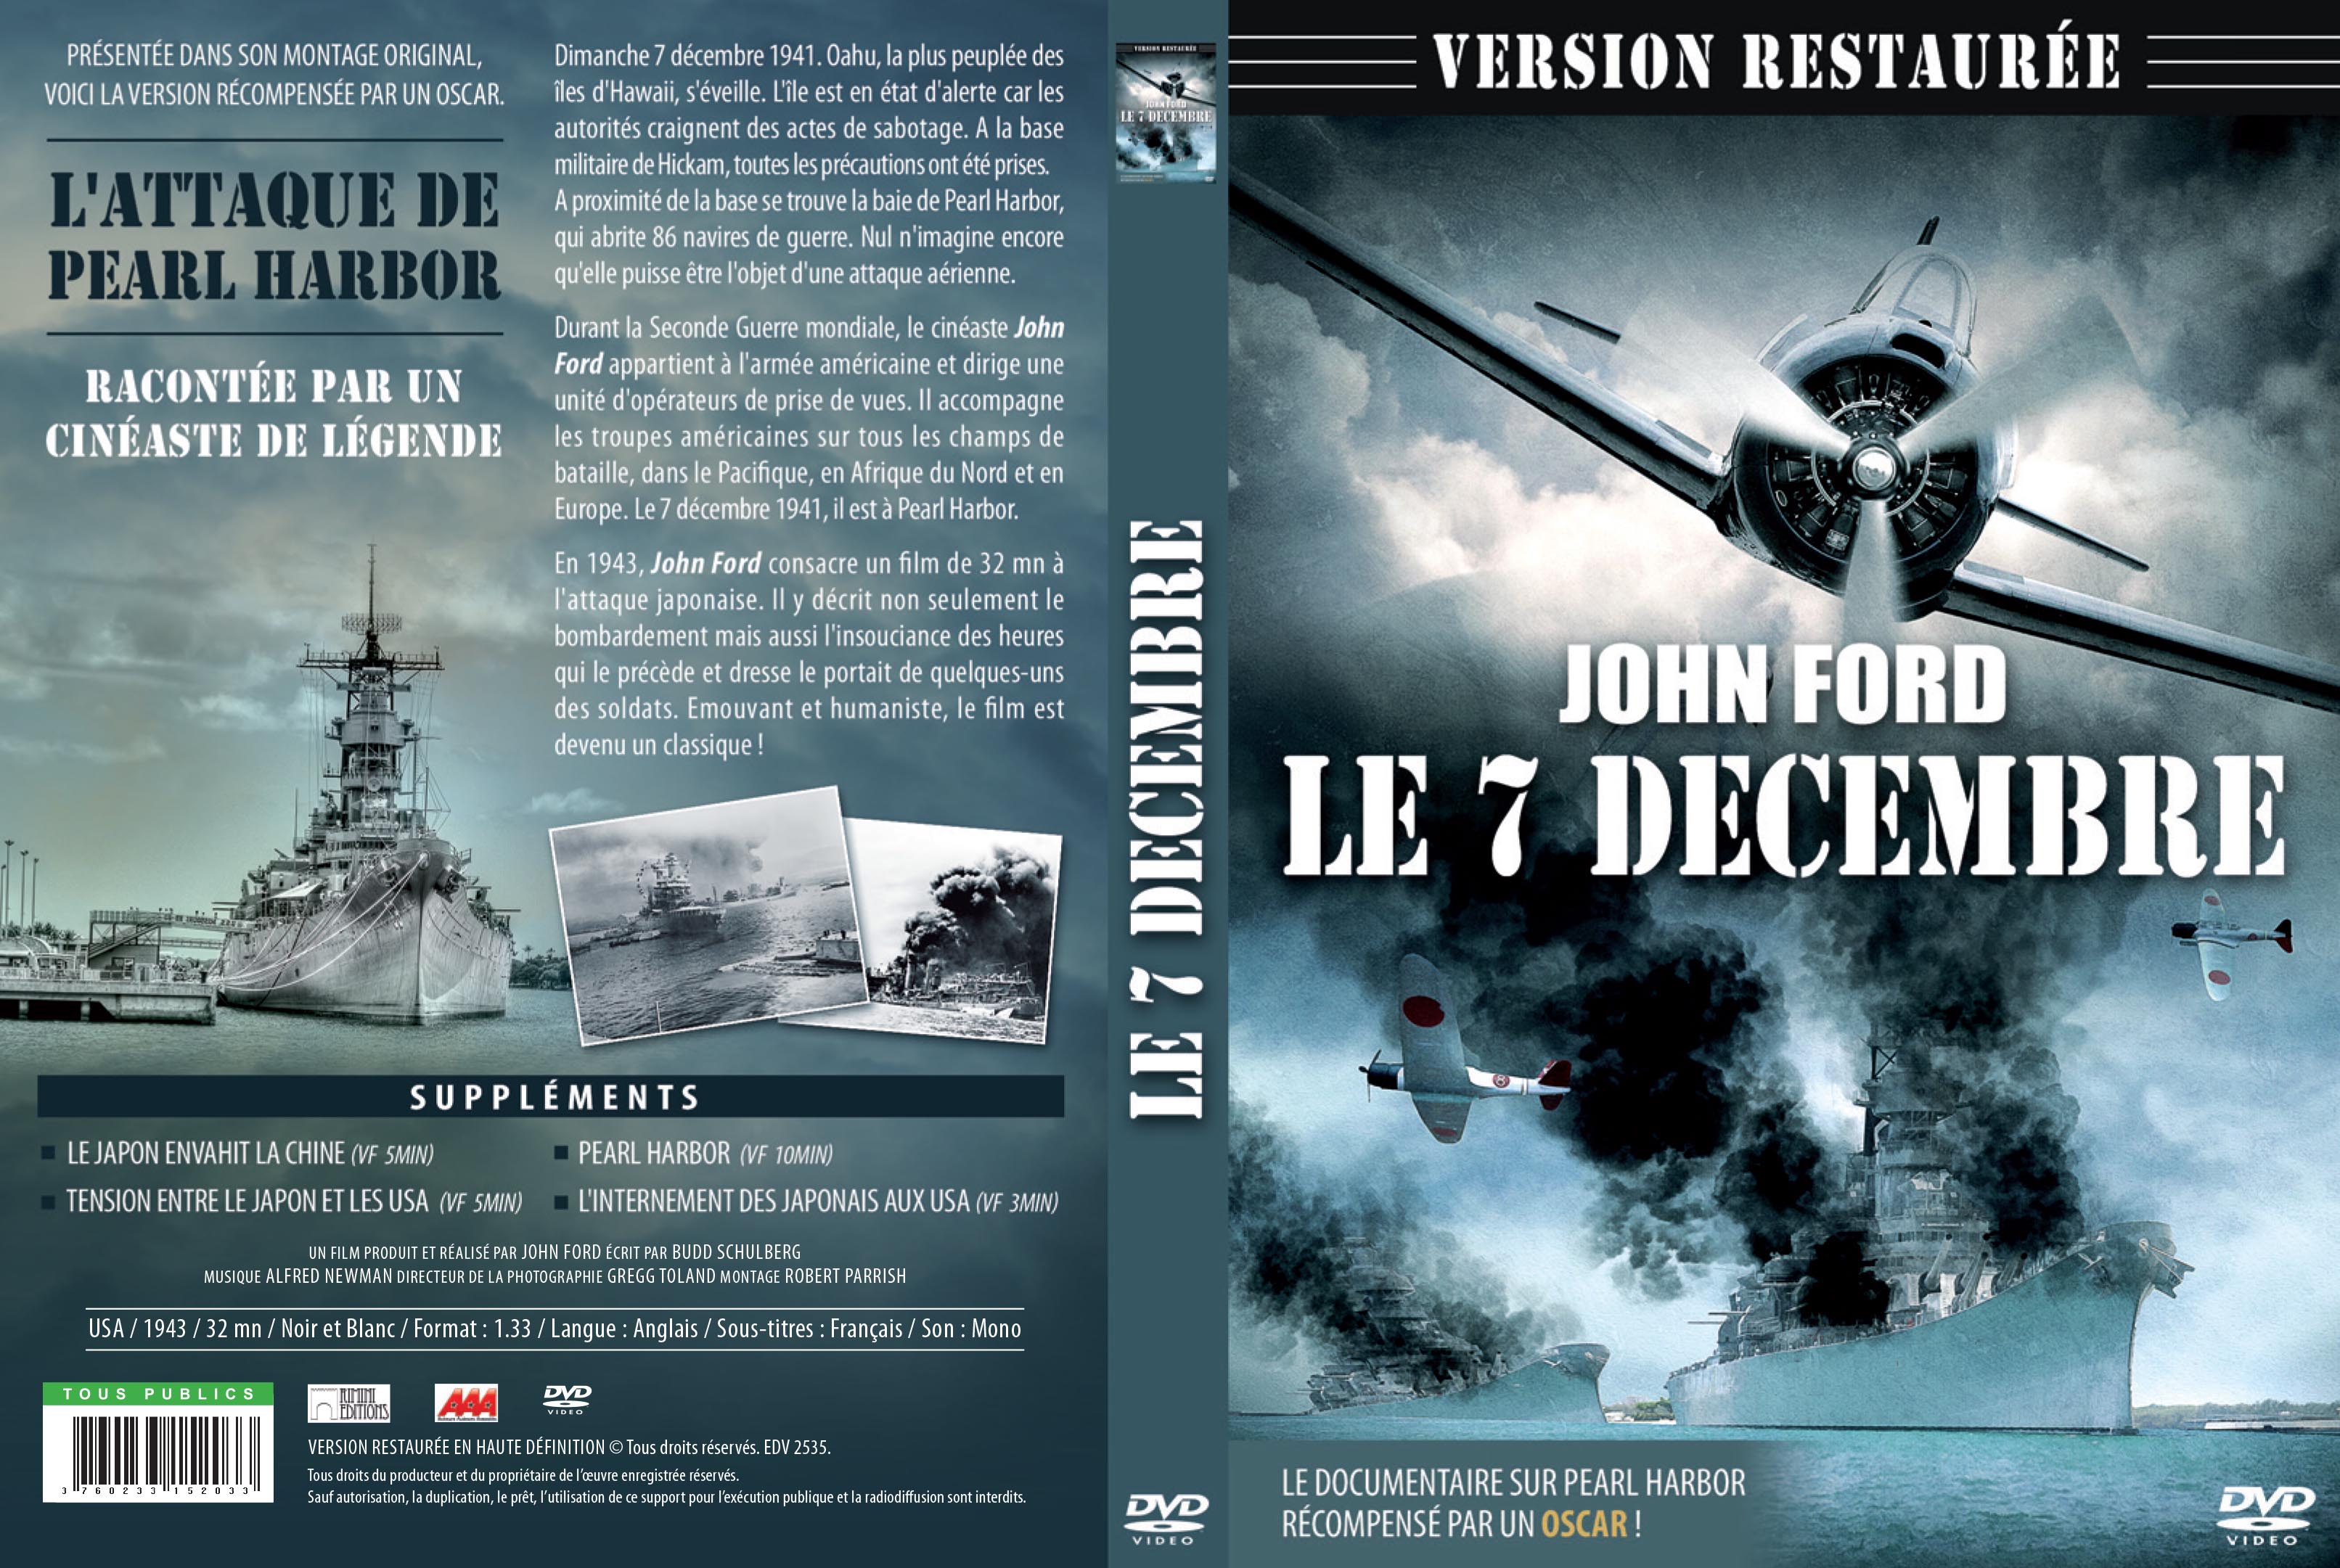 Jaquette DVD Le 7 decembre v2